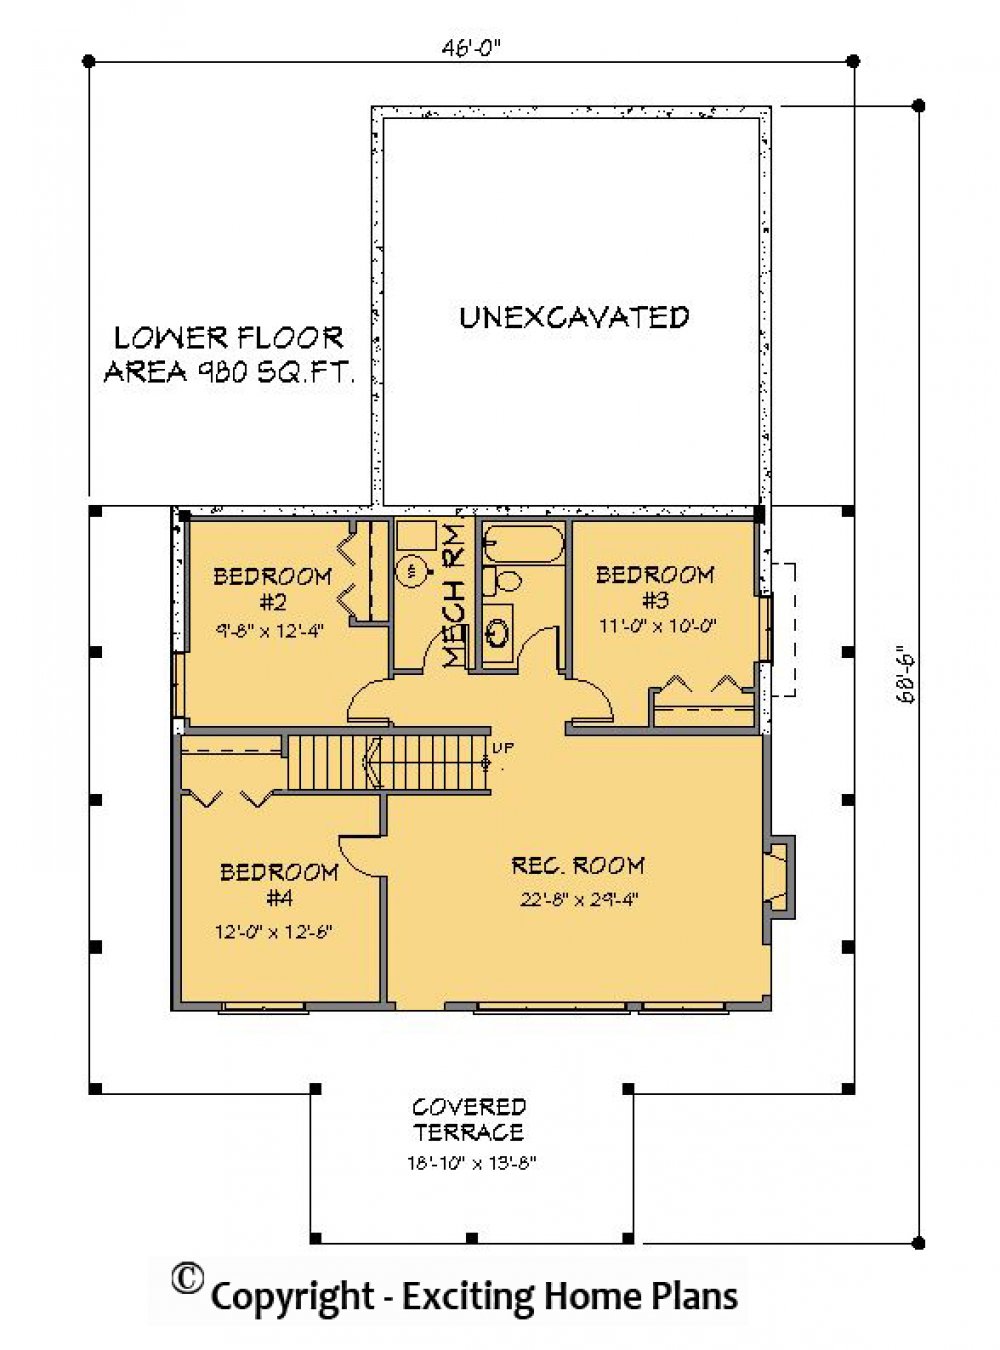 House Plan E1182-10 Lower Floor Plan